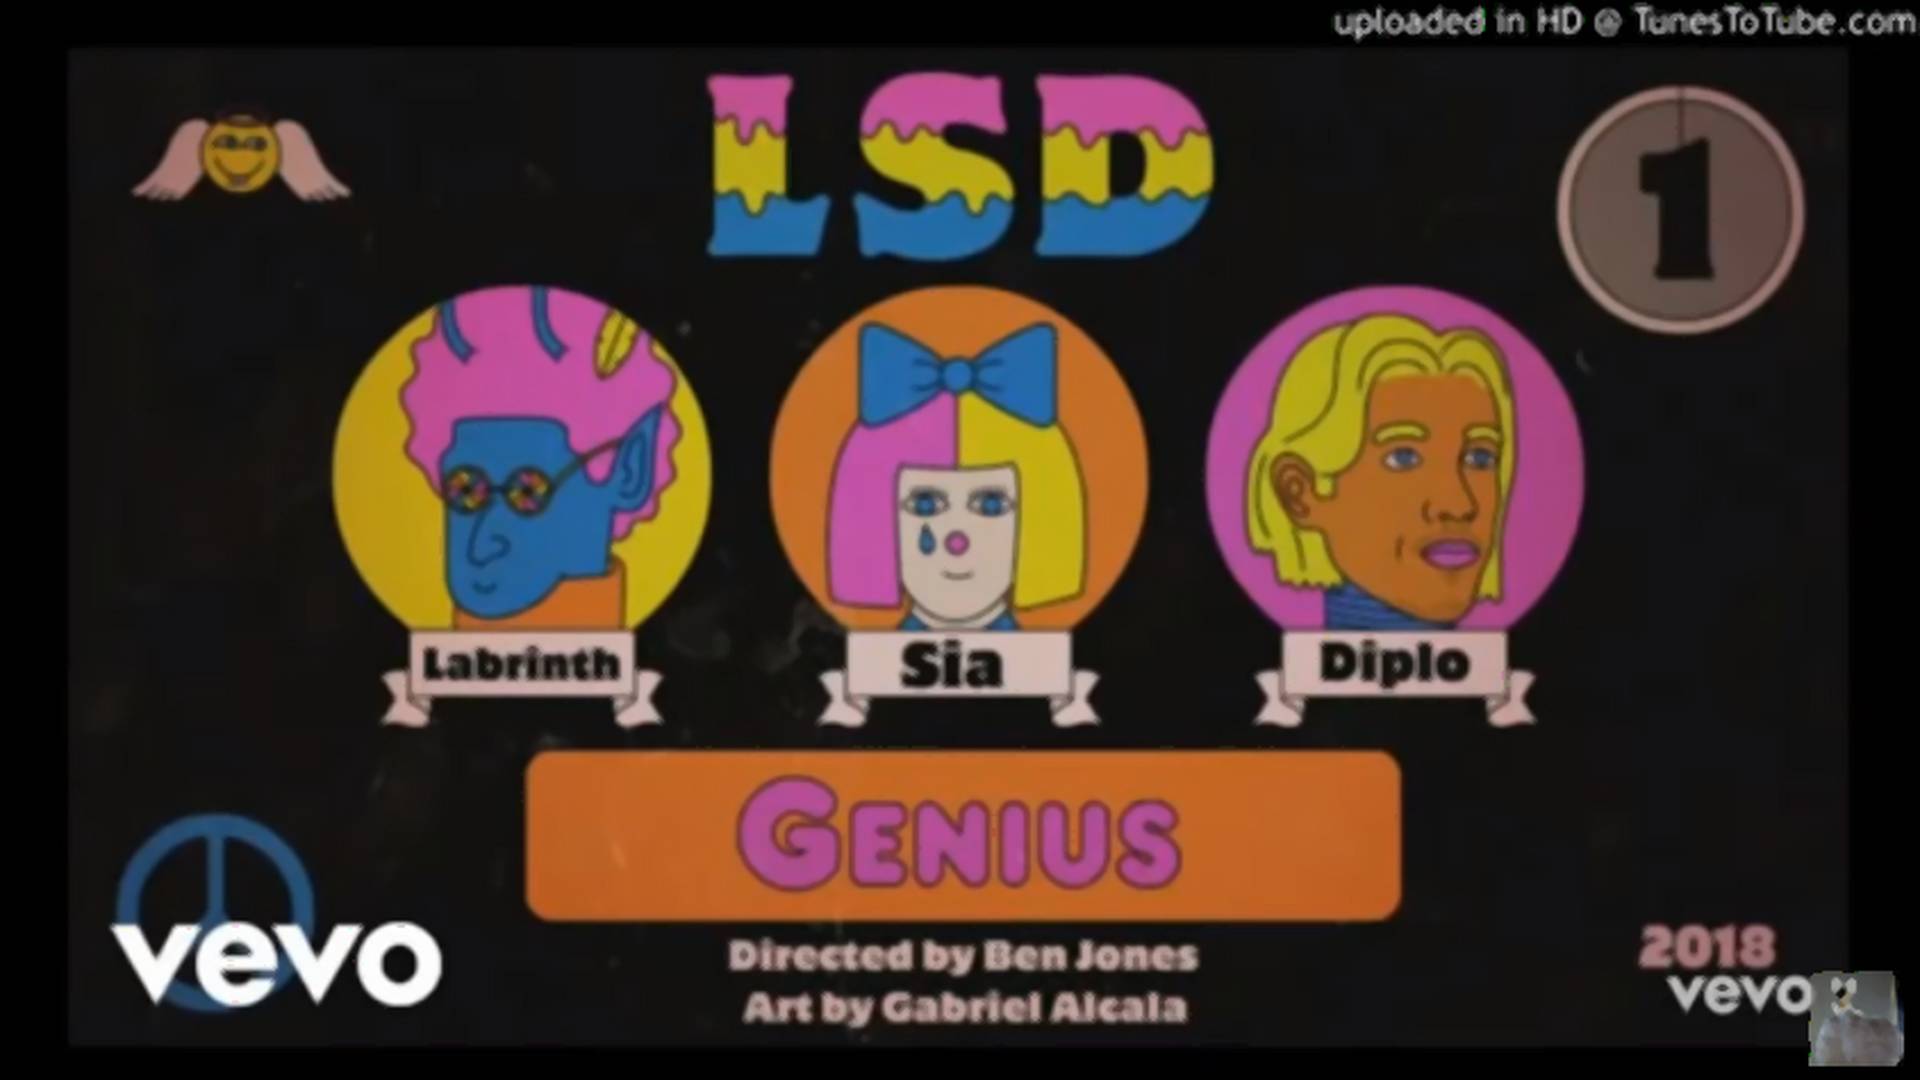 LSD: Supergrupa koju su oformili Labrinth, Sia i Diplo